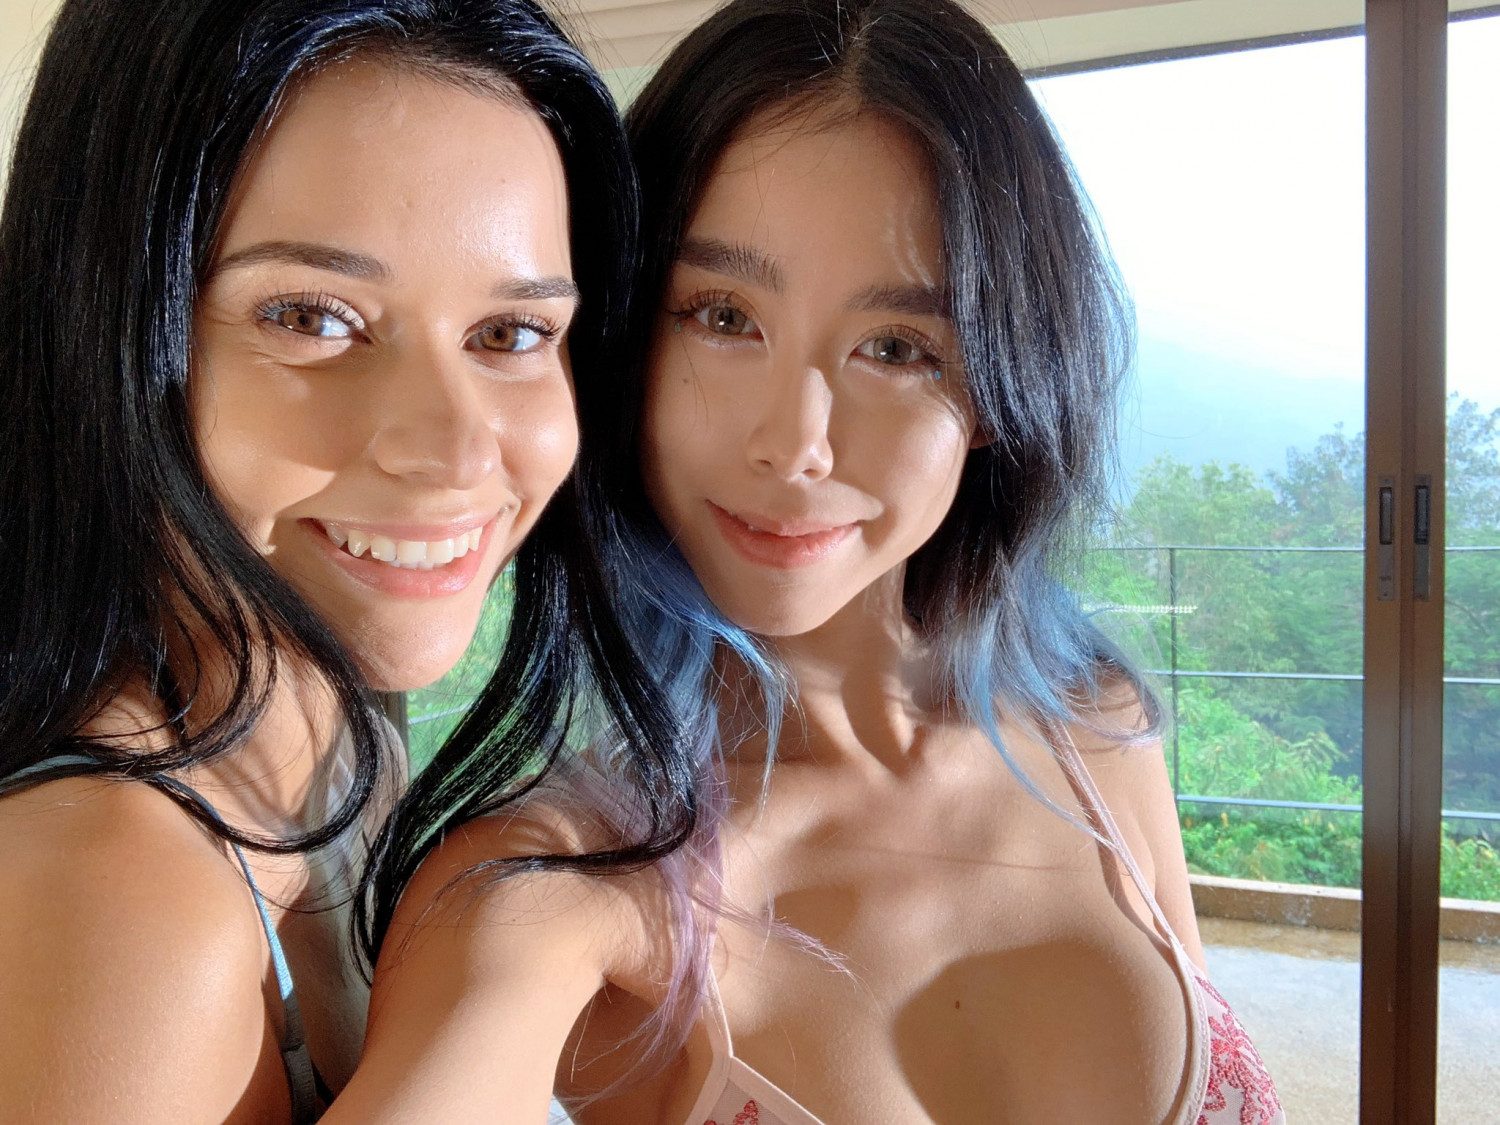 Joey Kim TV - Asian Girl - Porn Videos and Photos